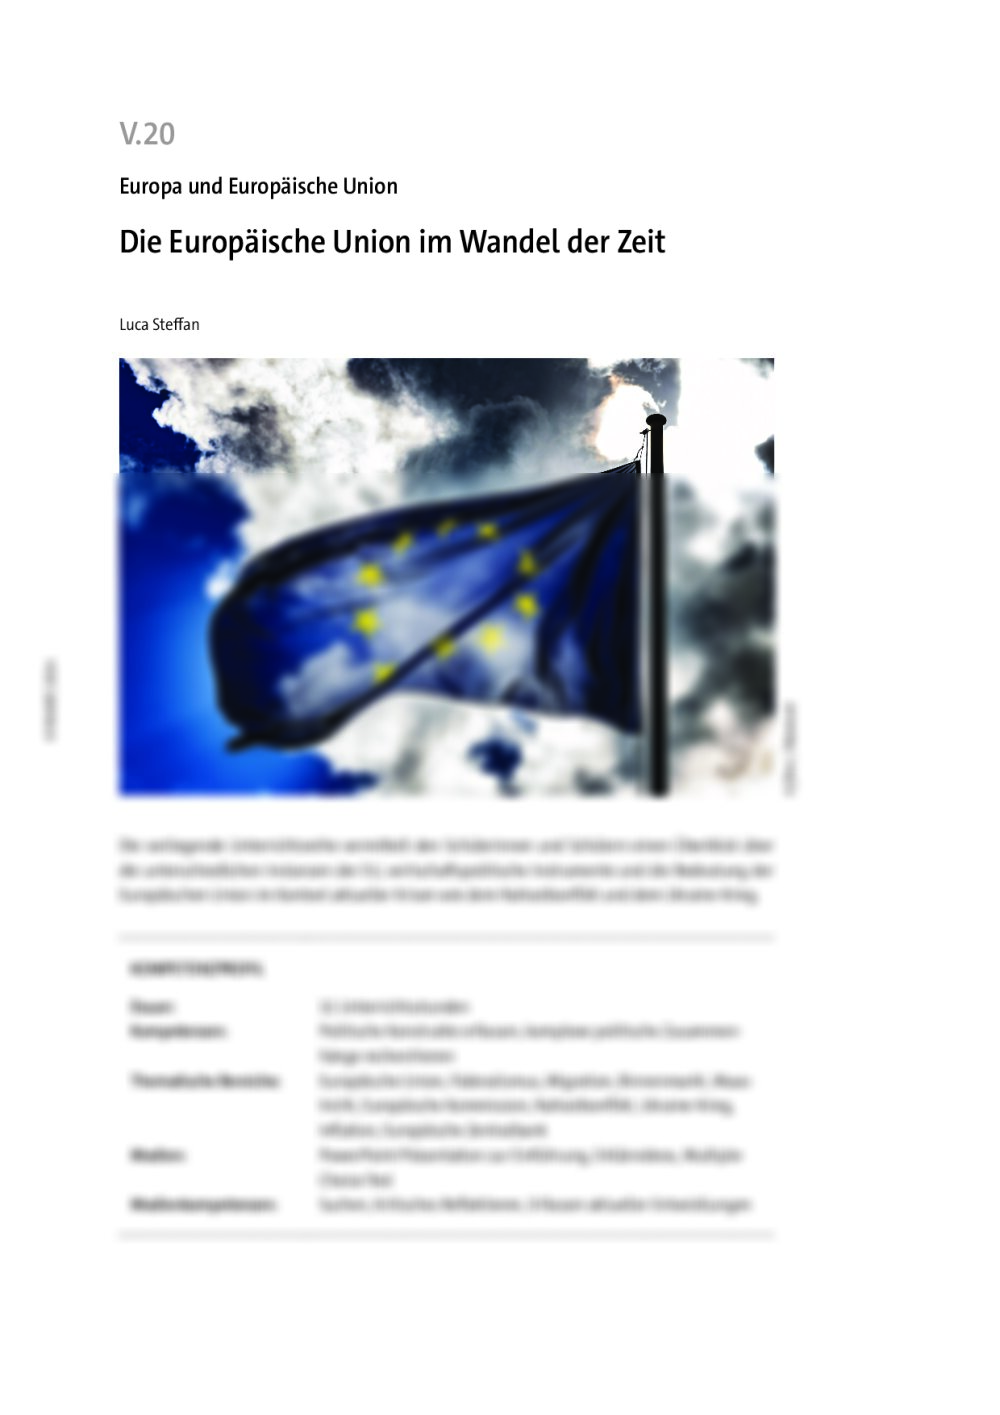 Die Europäische Union im Wandel der Zeit - Seite 1